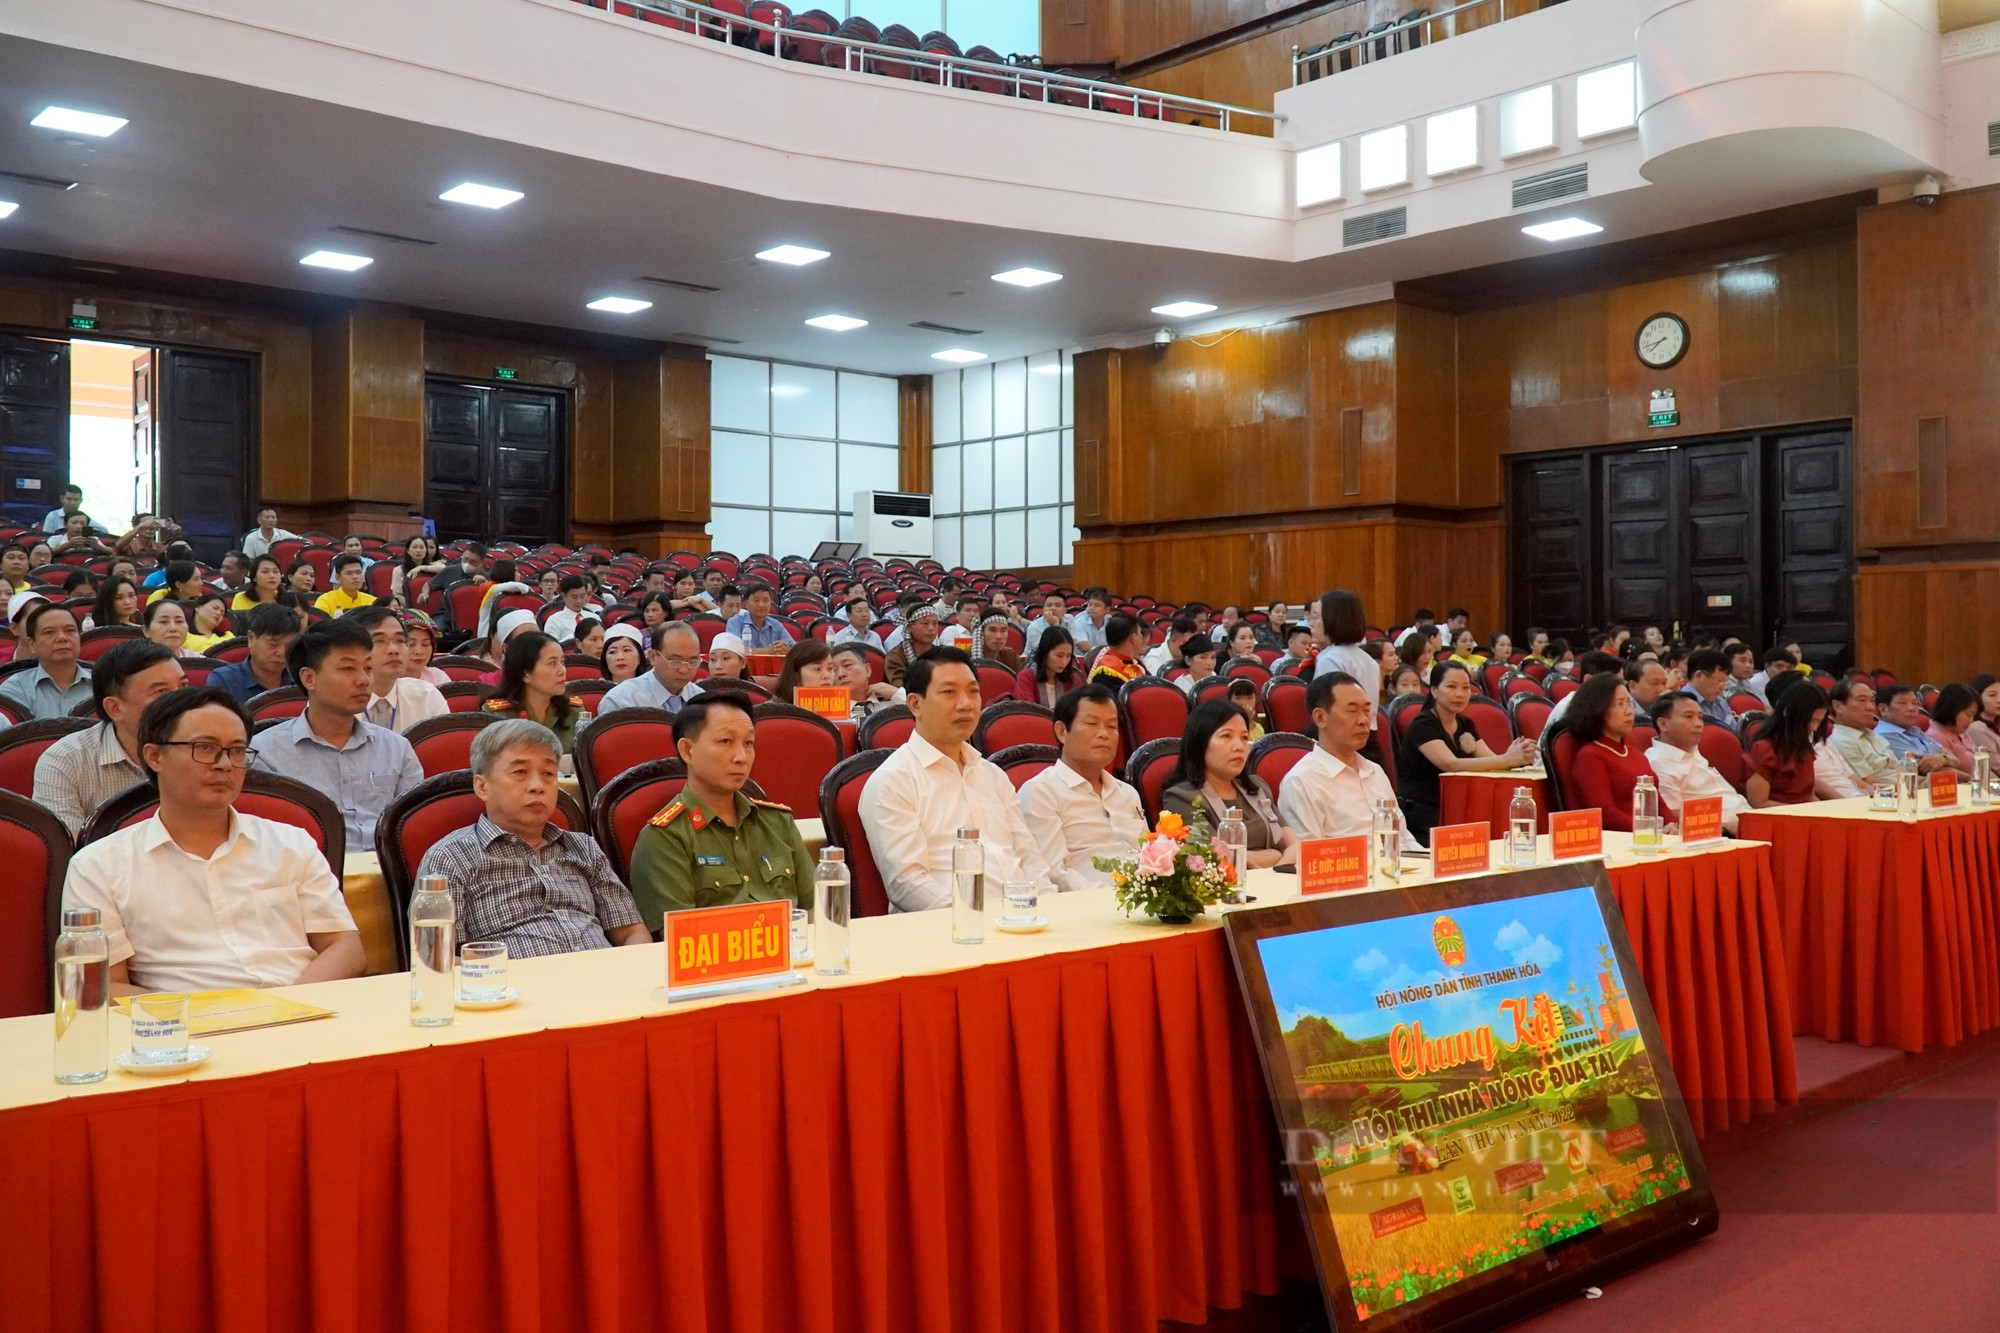 Chung kết Hội thi Nhà nông đua tài tỉnh Thanh Hóa năm 2022, Hội Nông dân huyện Đông Sơn đạt giải Nhất - Ảnh 1.